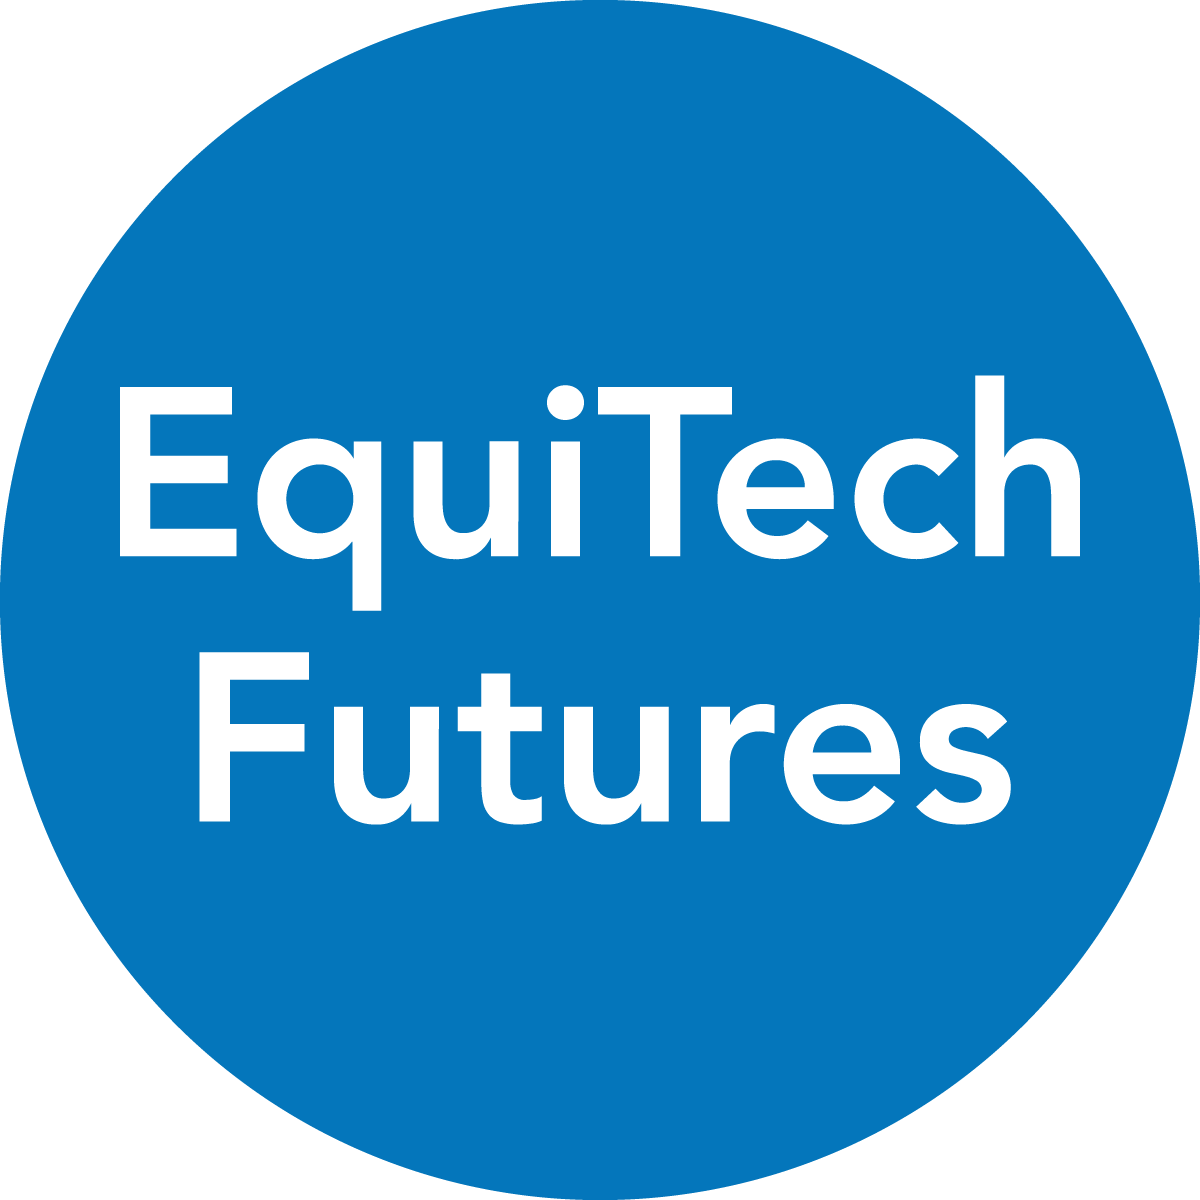 Equitech Futures